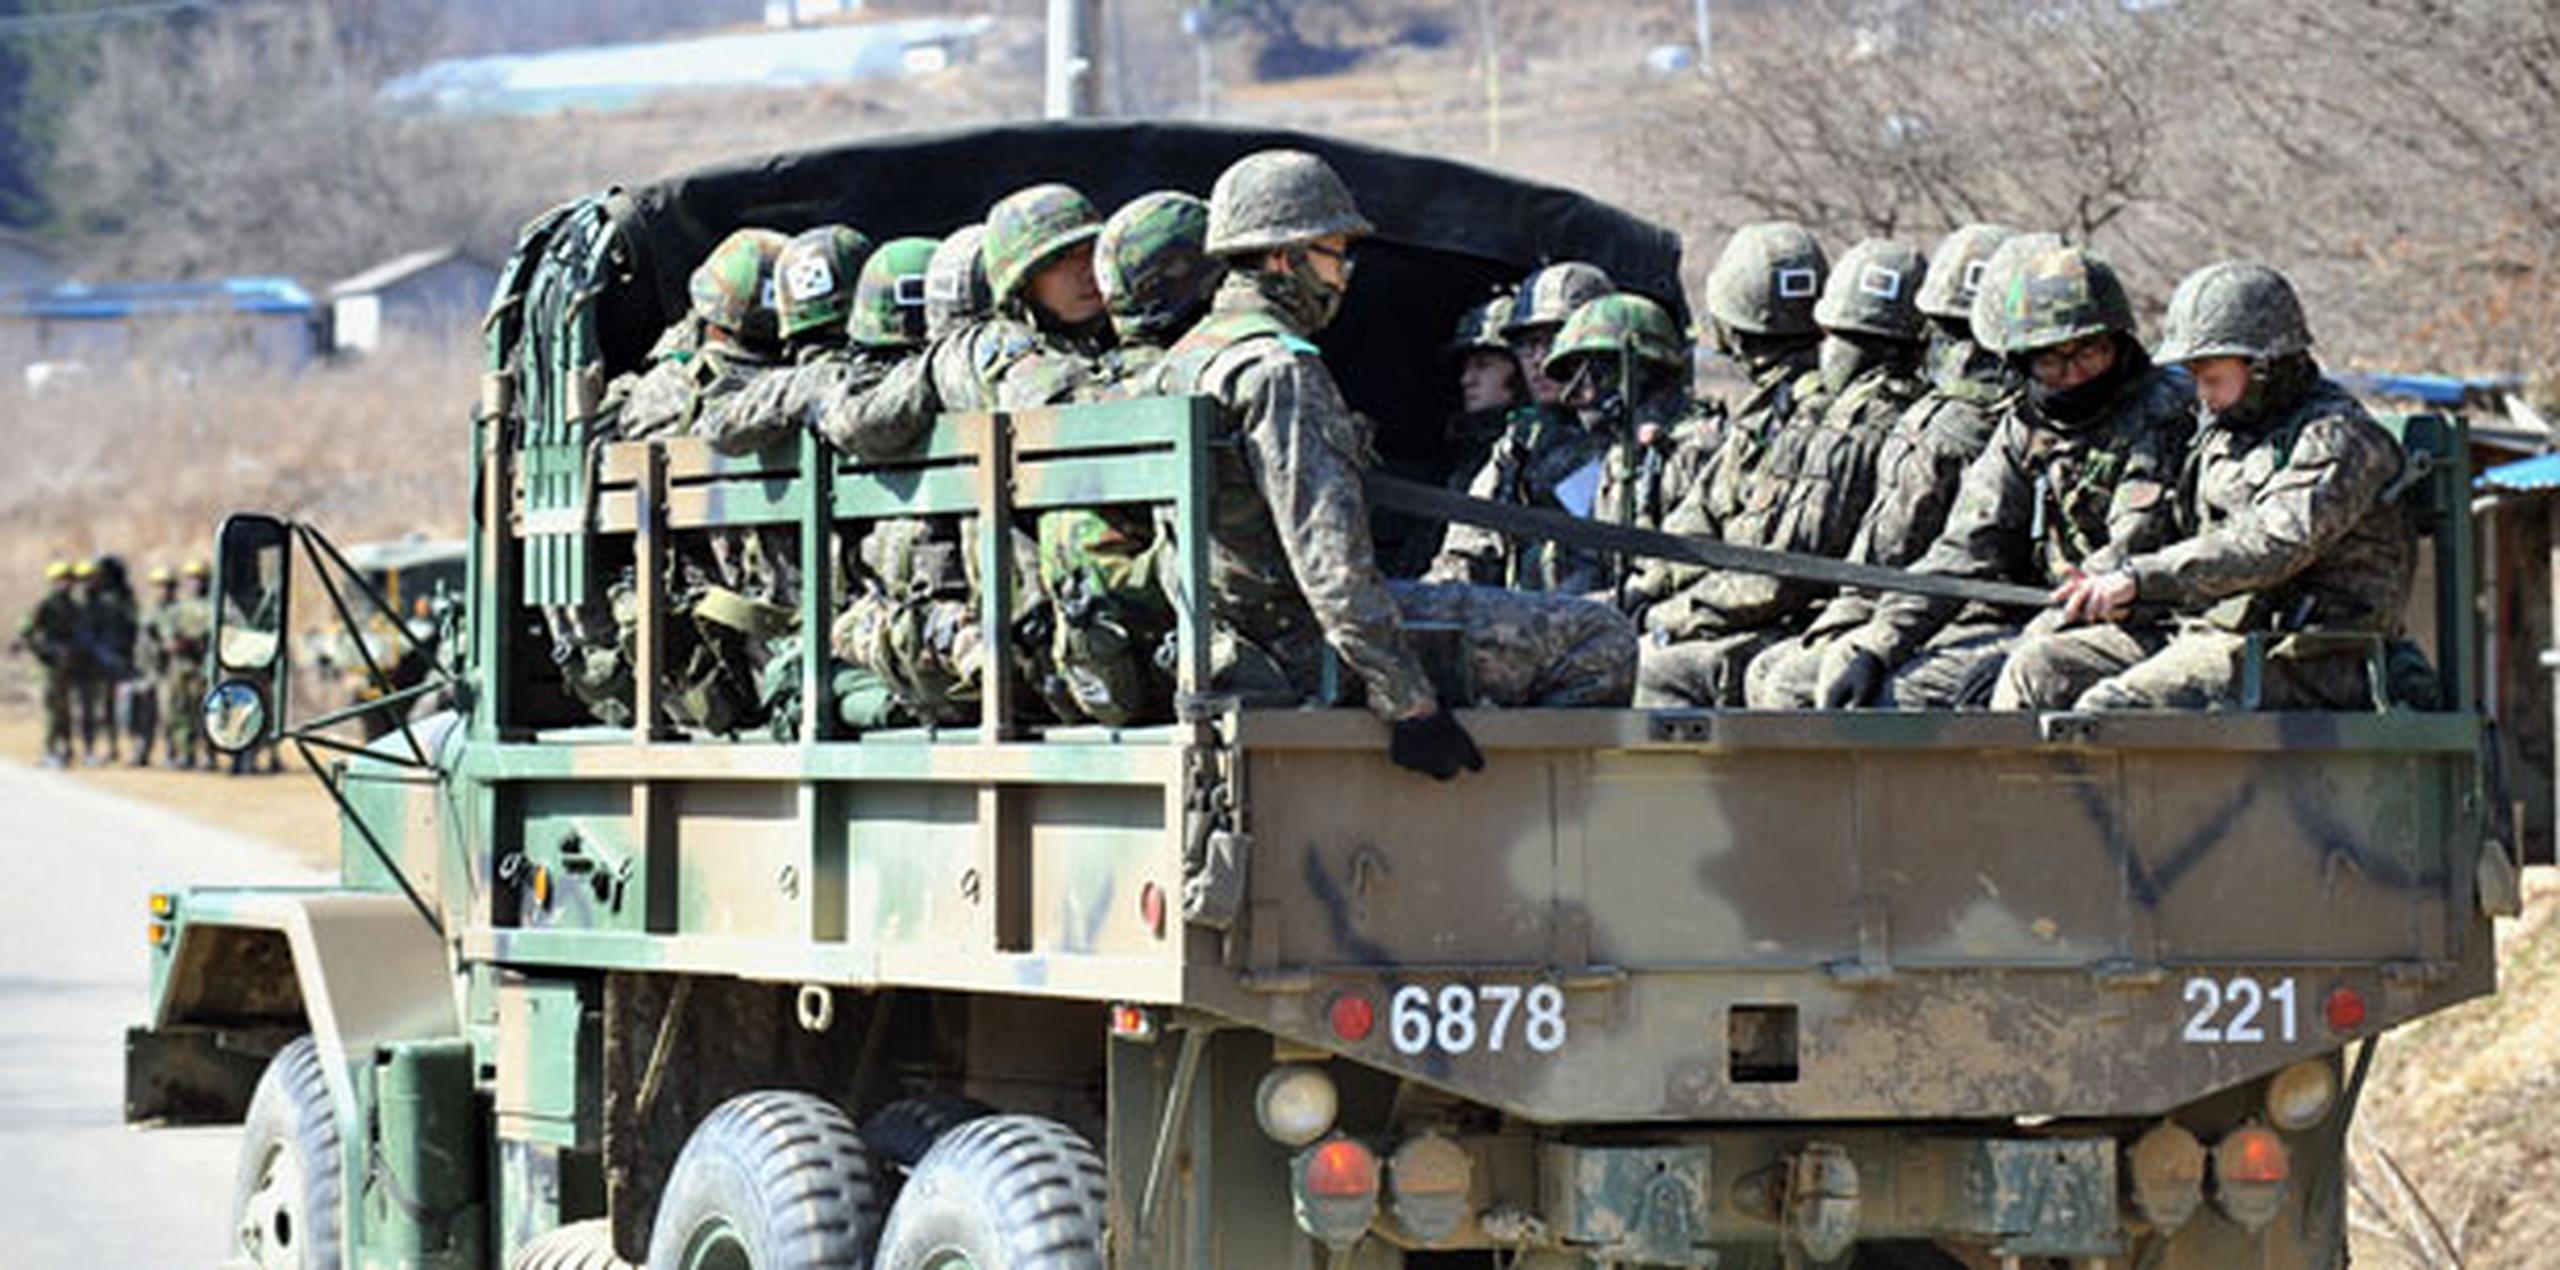 Tras las amenazas de Corea del Norte, Estados Unidos y Corea del Sur se mantienen alerta y observan con detenimiento los movimientos en las bases norcoreanas. (AP)